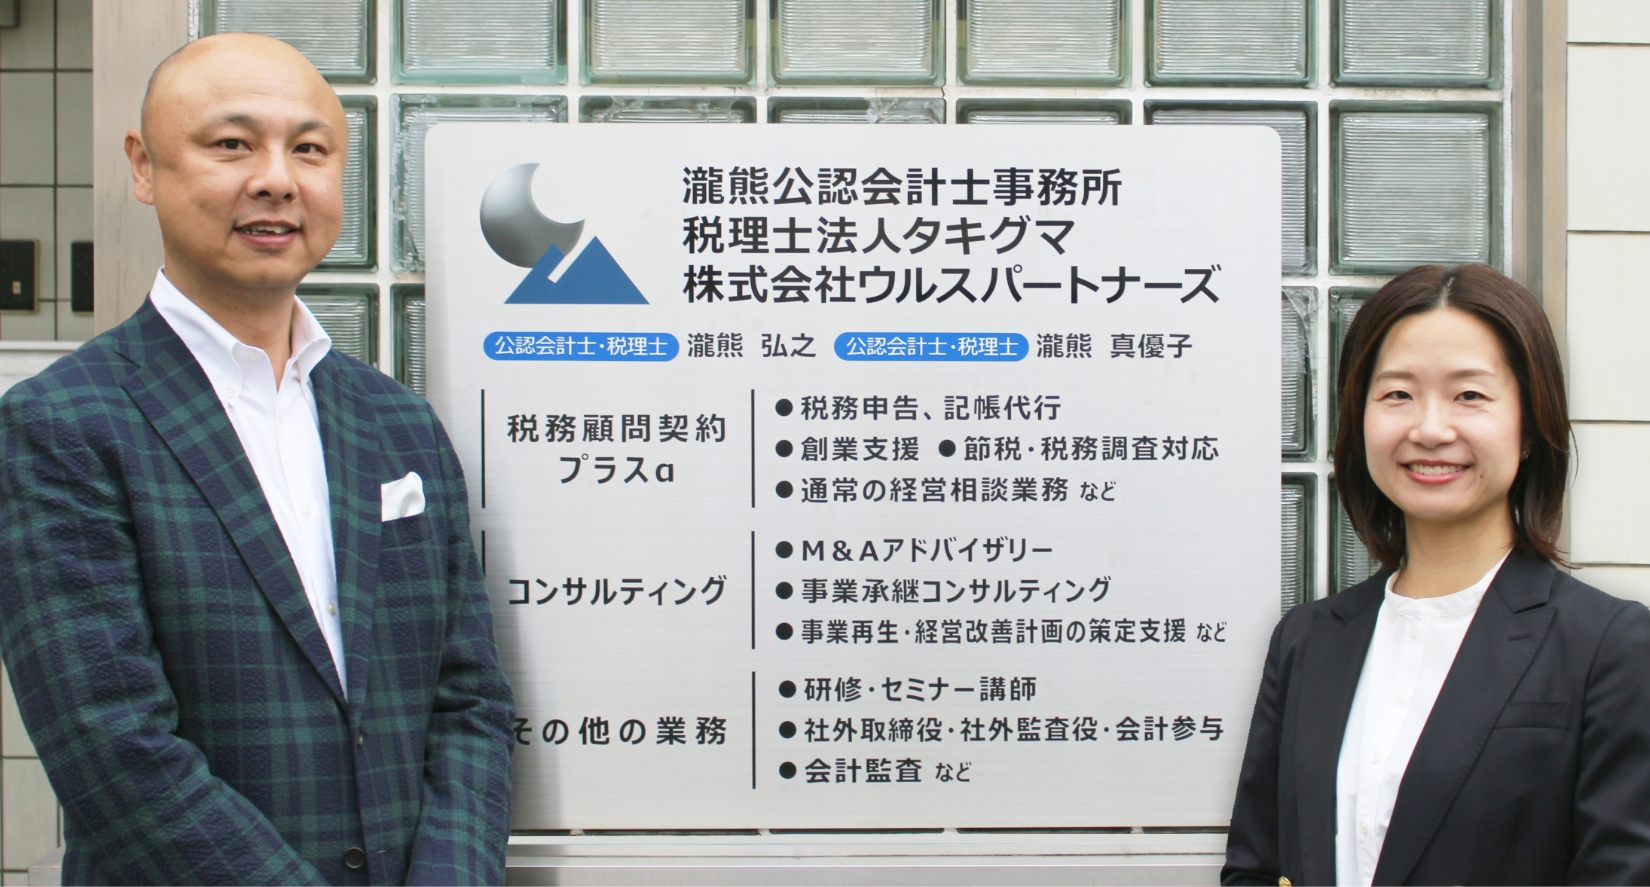 瀧熊弘之と瀧熊真優子の2人が事務所の看板の前で笑顔で立っている様子